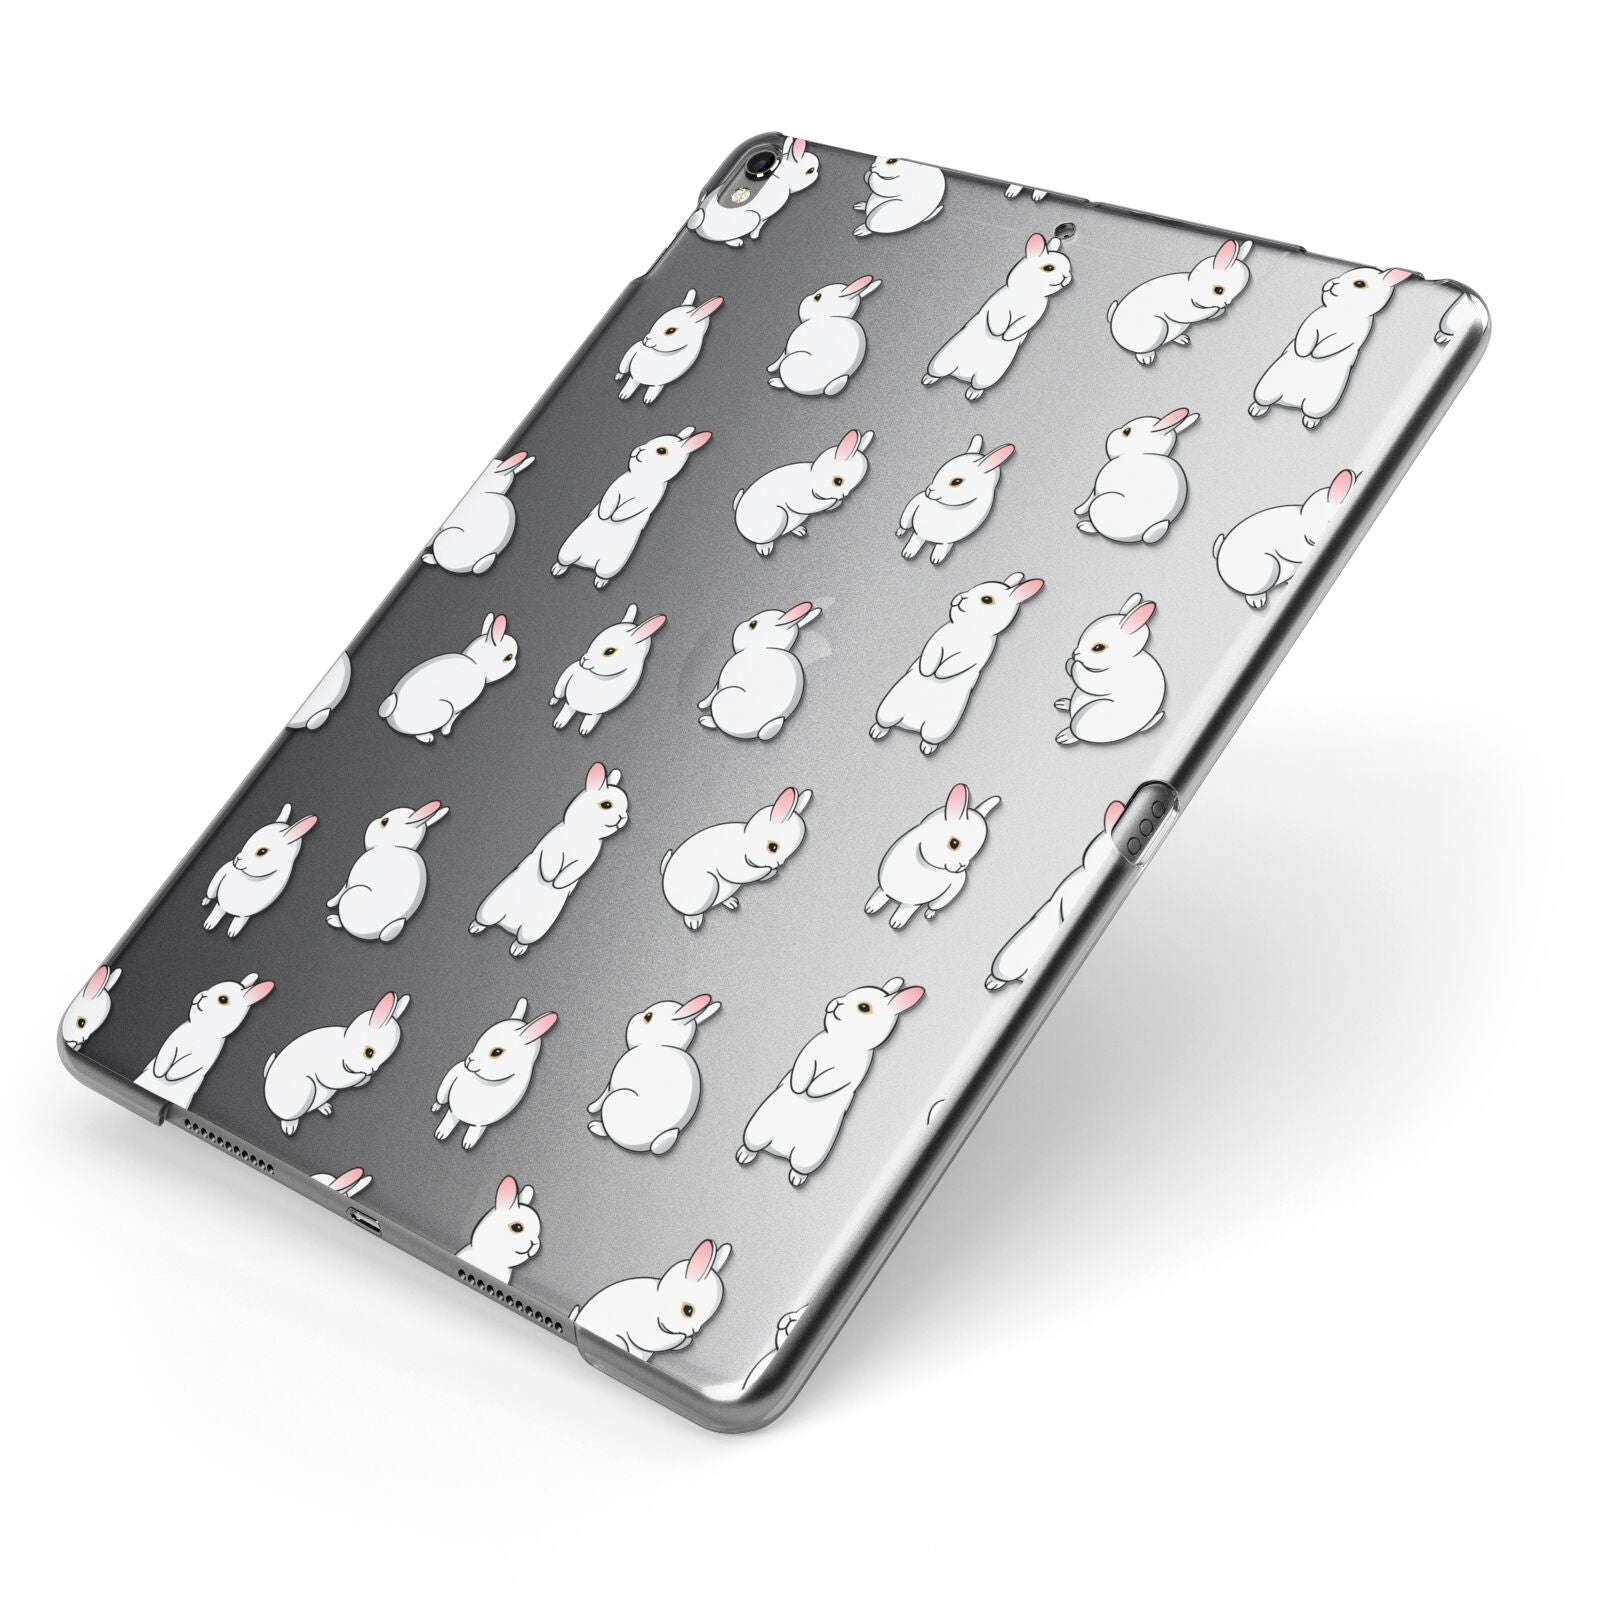 Bunny Rabbit Apple iPad Case on Grey iPad Side View